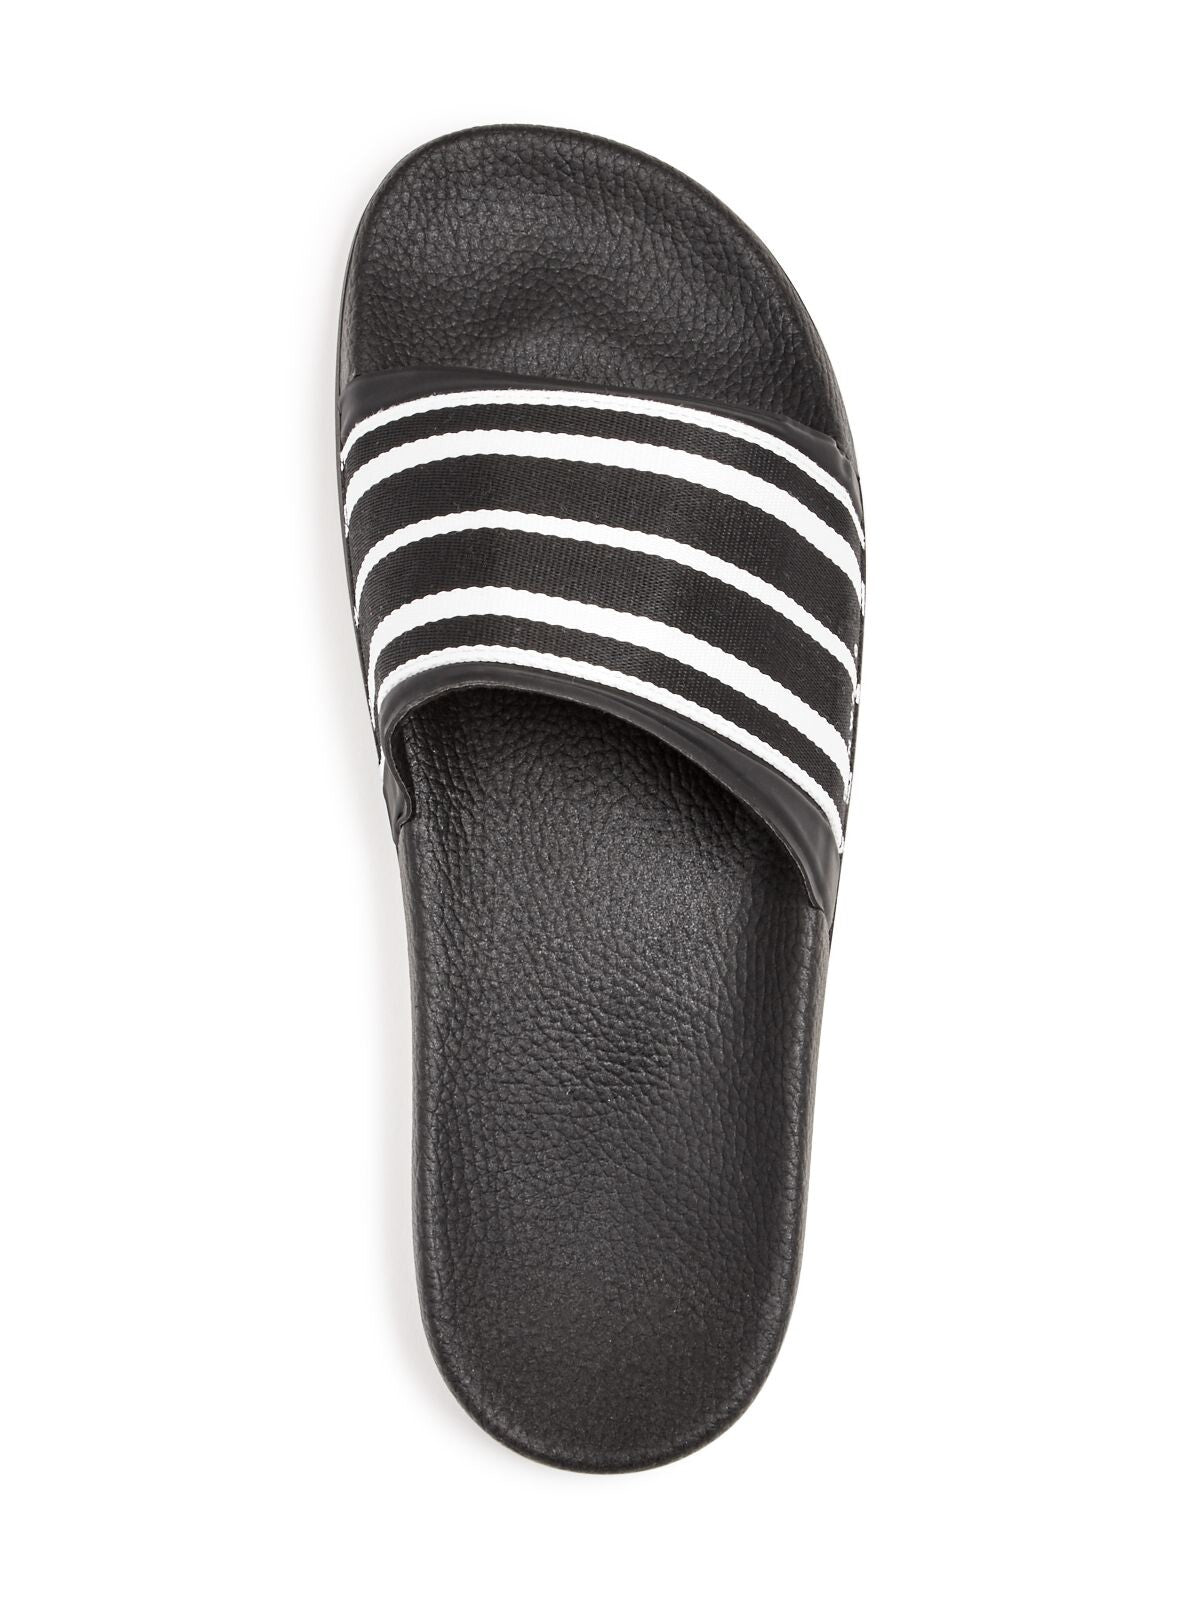 DAN WARD Mens Black Striped Comfort Round Toe Platform Slip On Slide Sandals Shoes 42